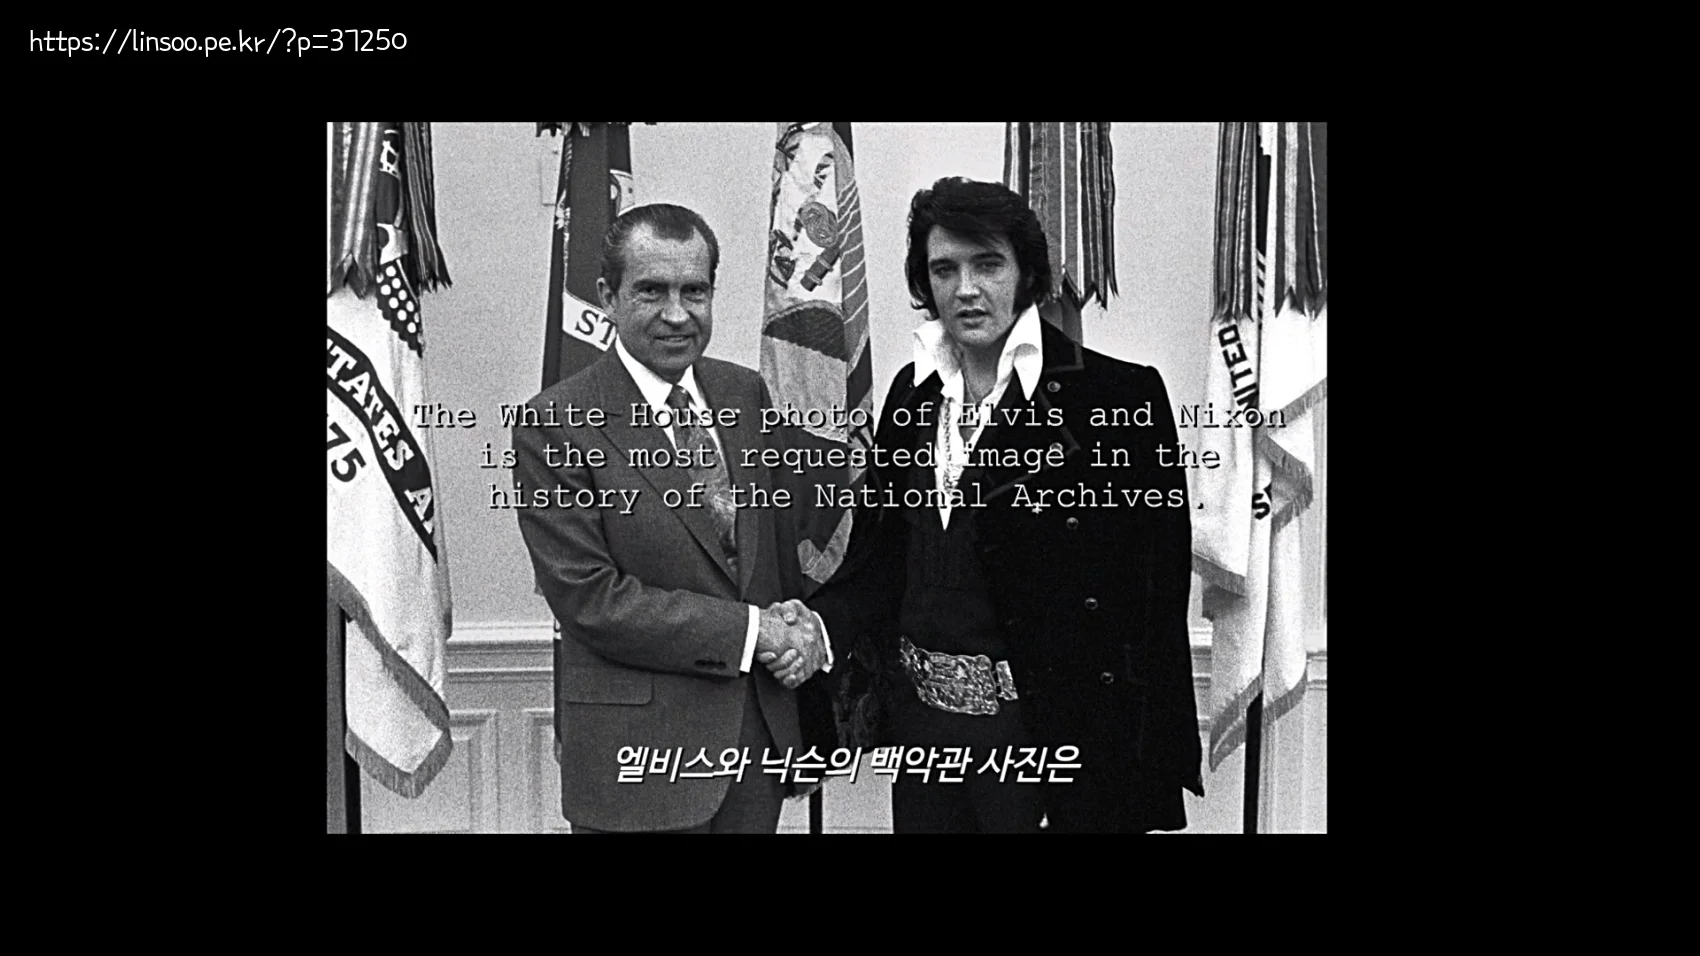 엘비스와 닉슨의 백악관 사진